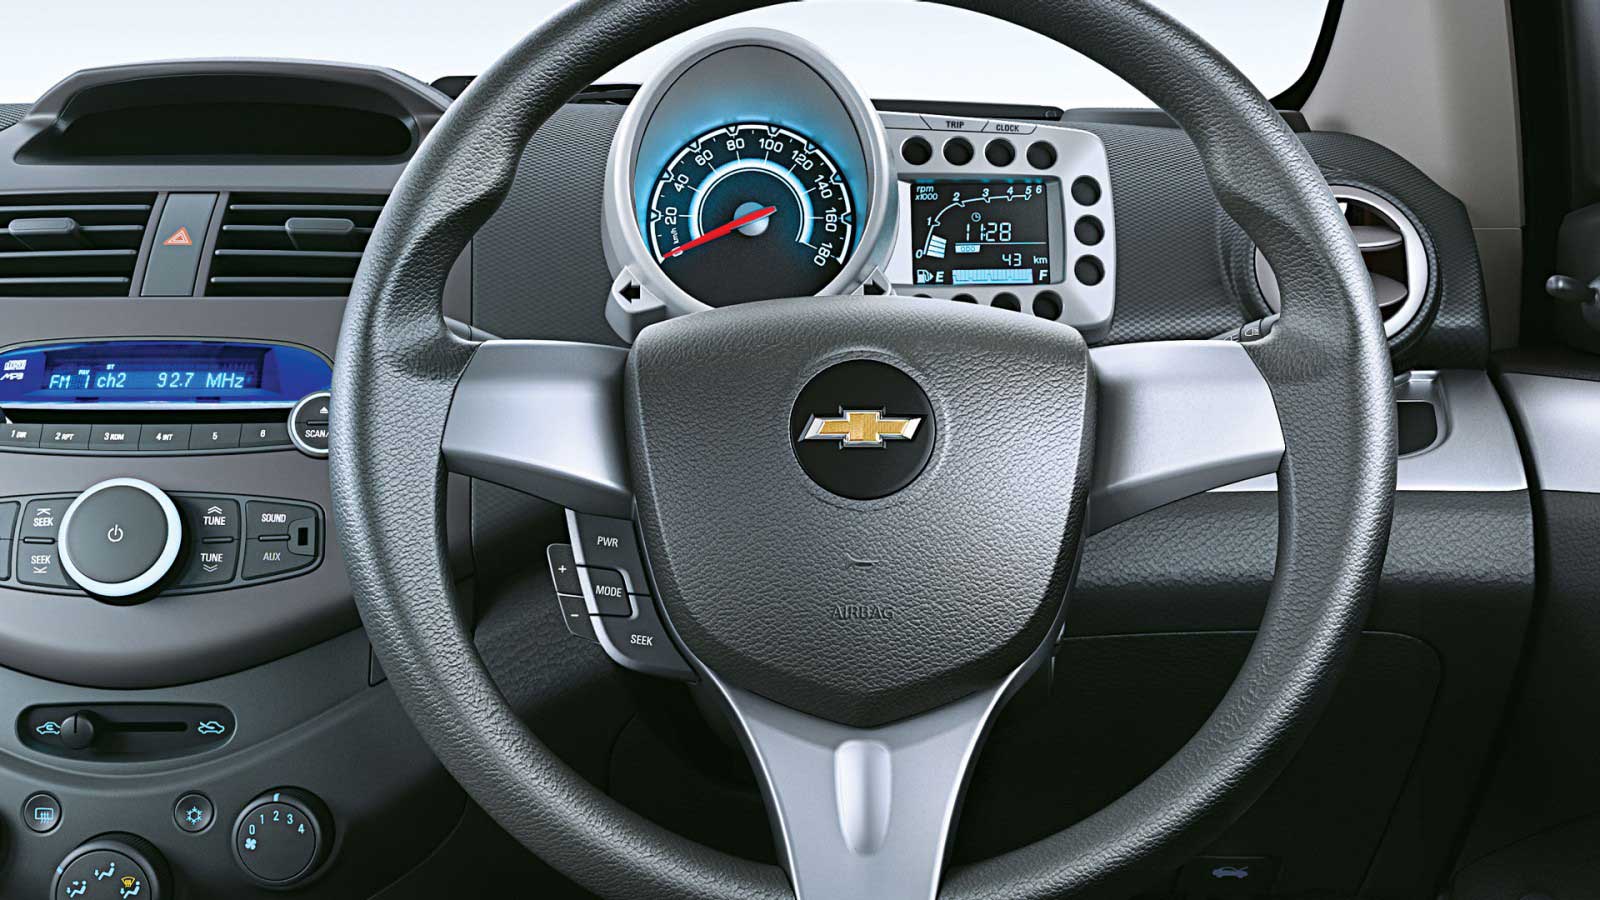 Chevrolet Beat PS Diesel Interior steering